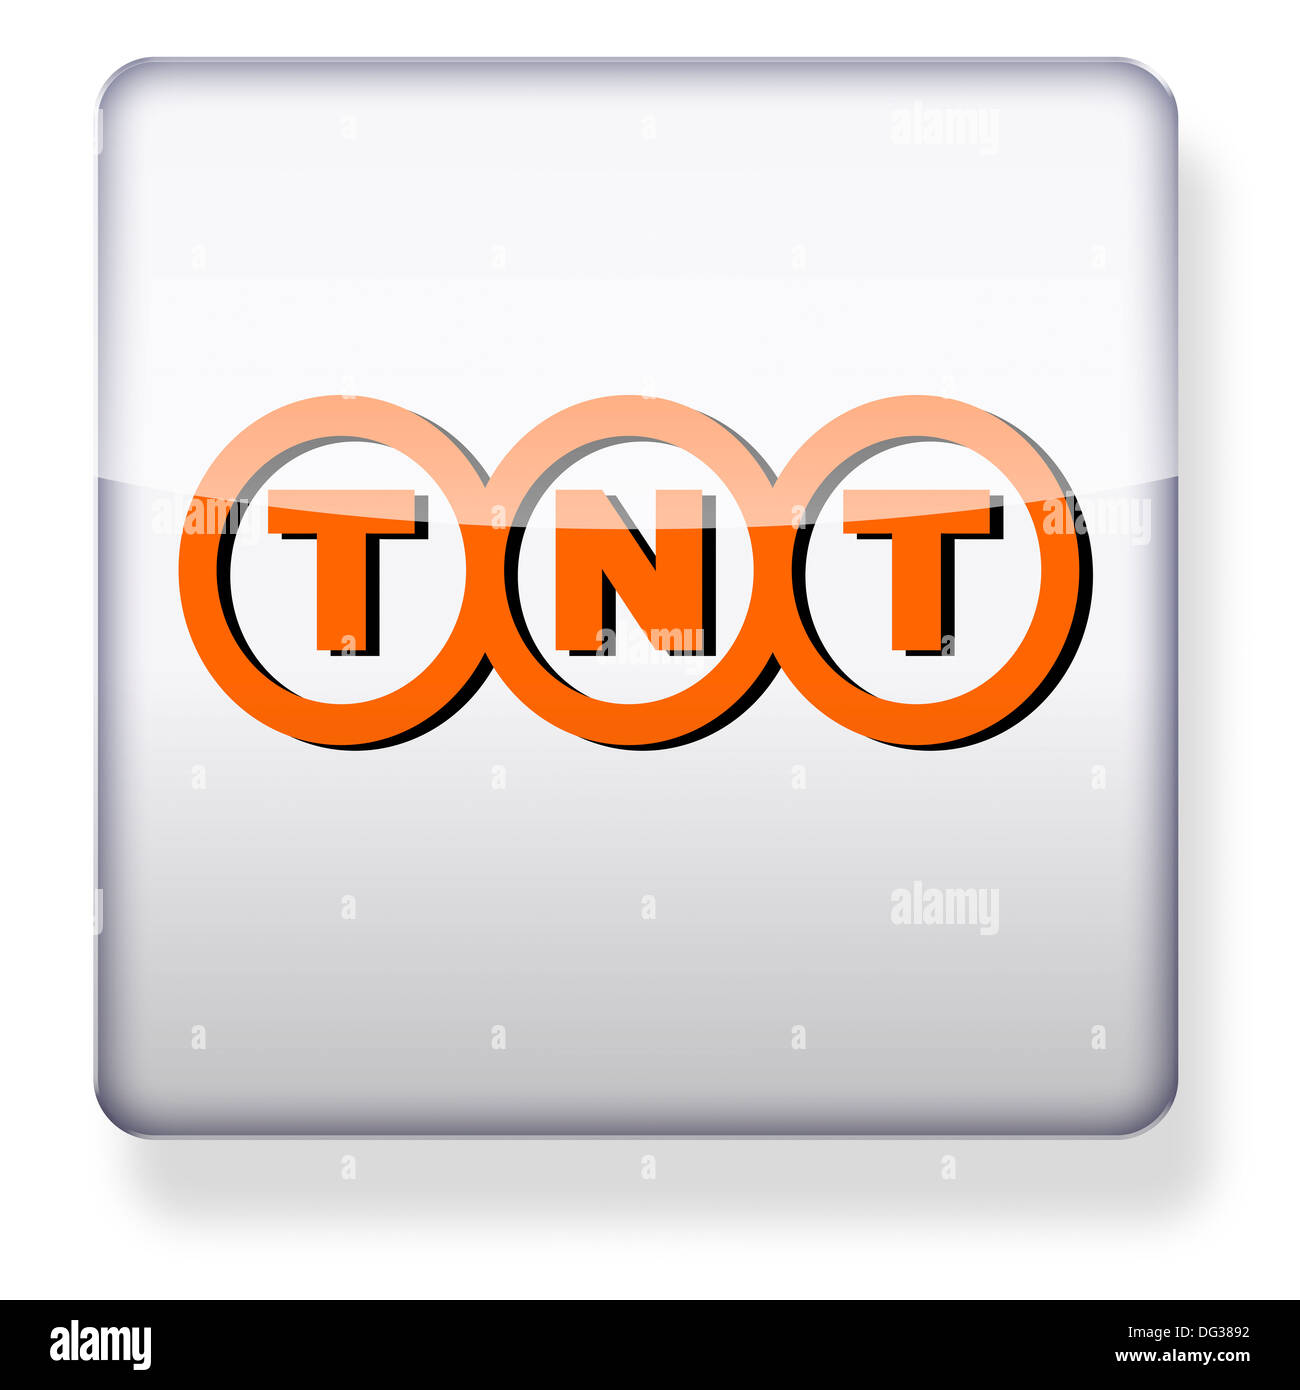 TNT Express logotipo como el icono de una aplicación. Trazado de recorte incluido. Foto de stock